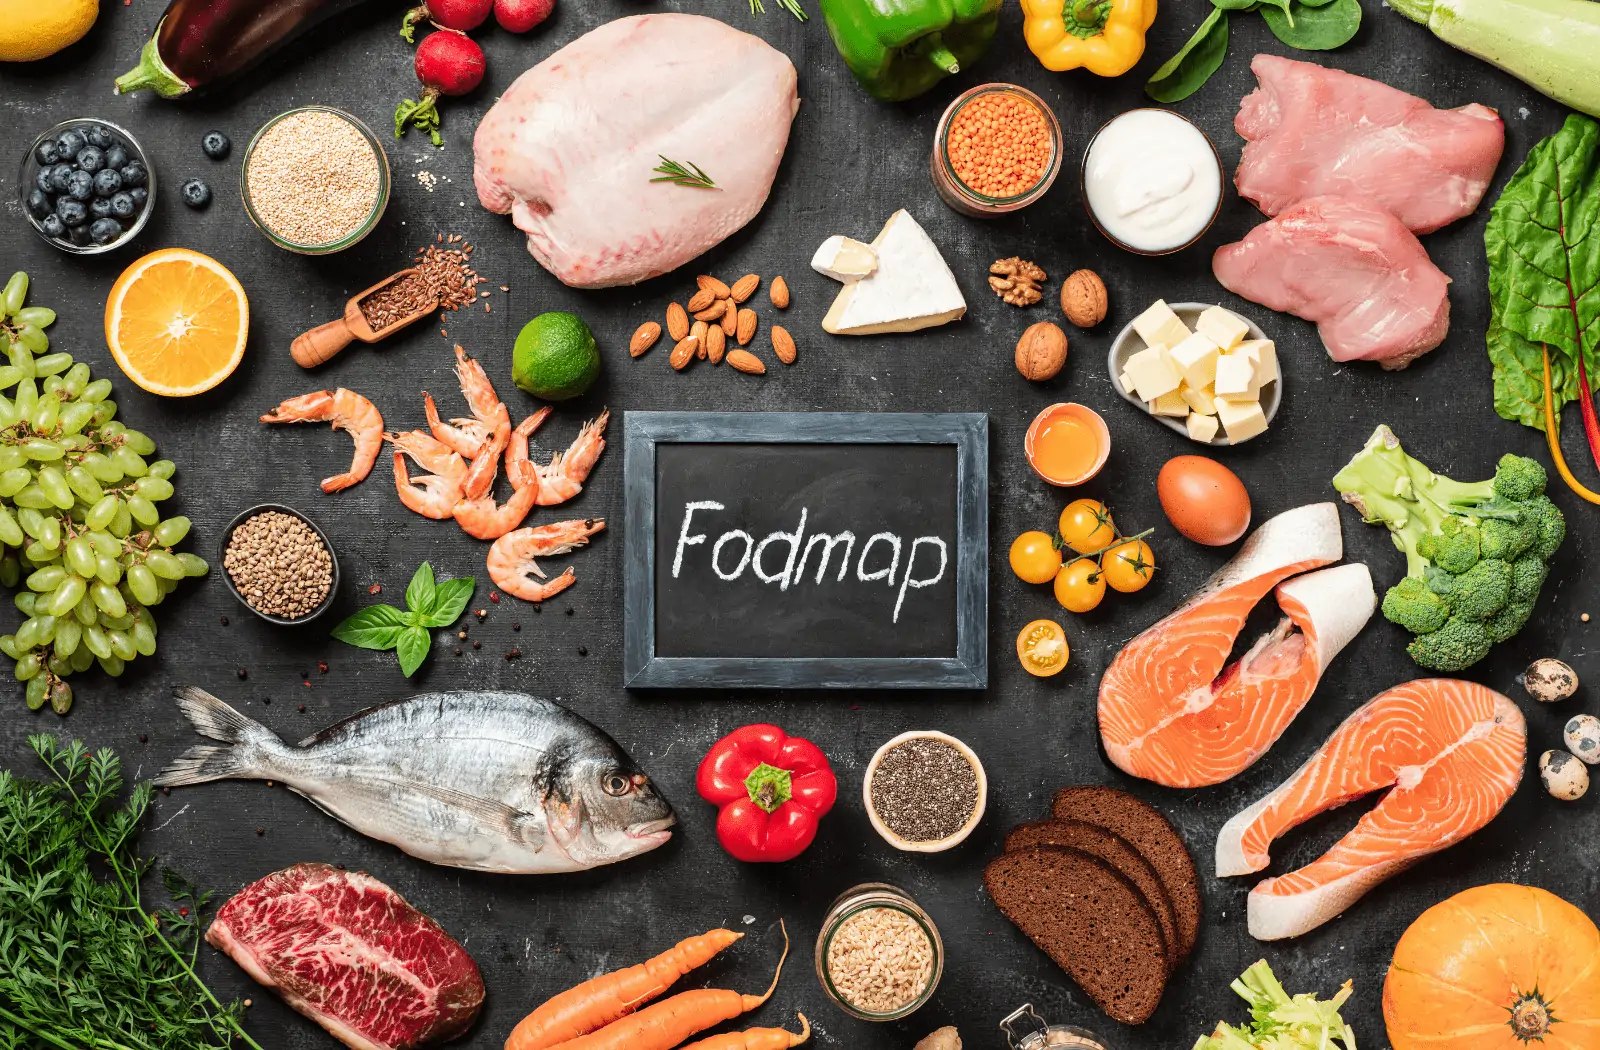 FODMAP diet